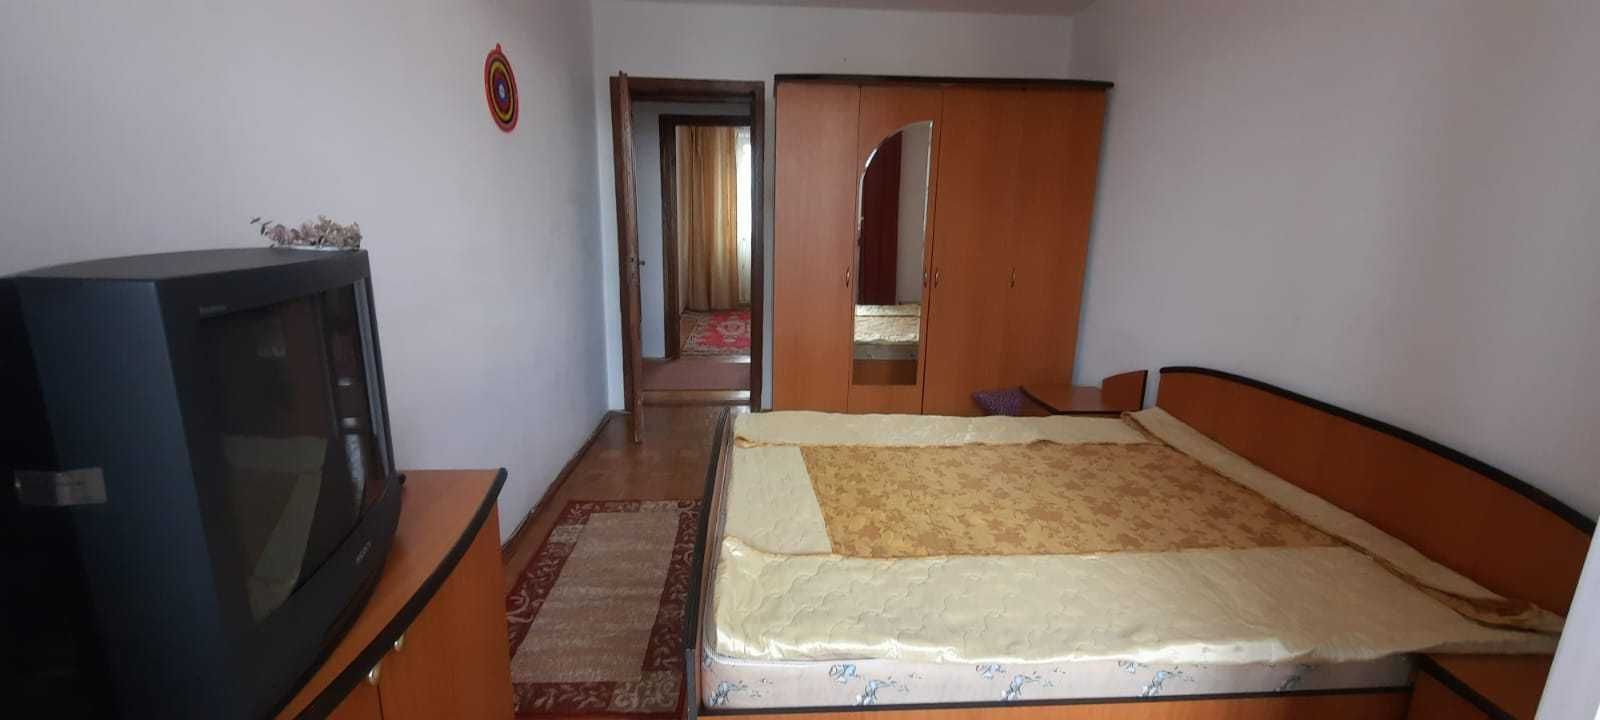 Vanzare Apartament 3 camere, Terezian, Sibiu